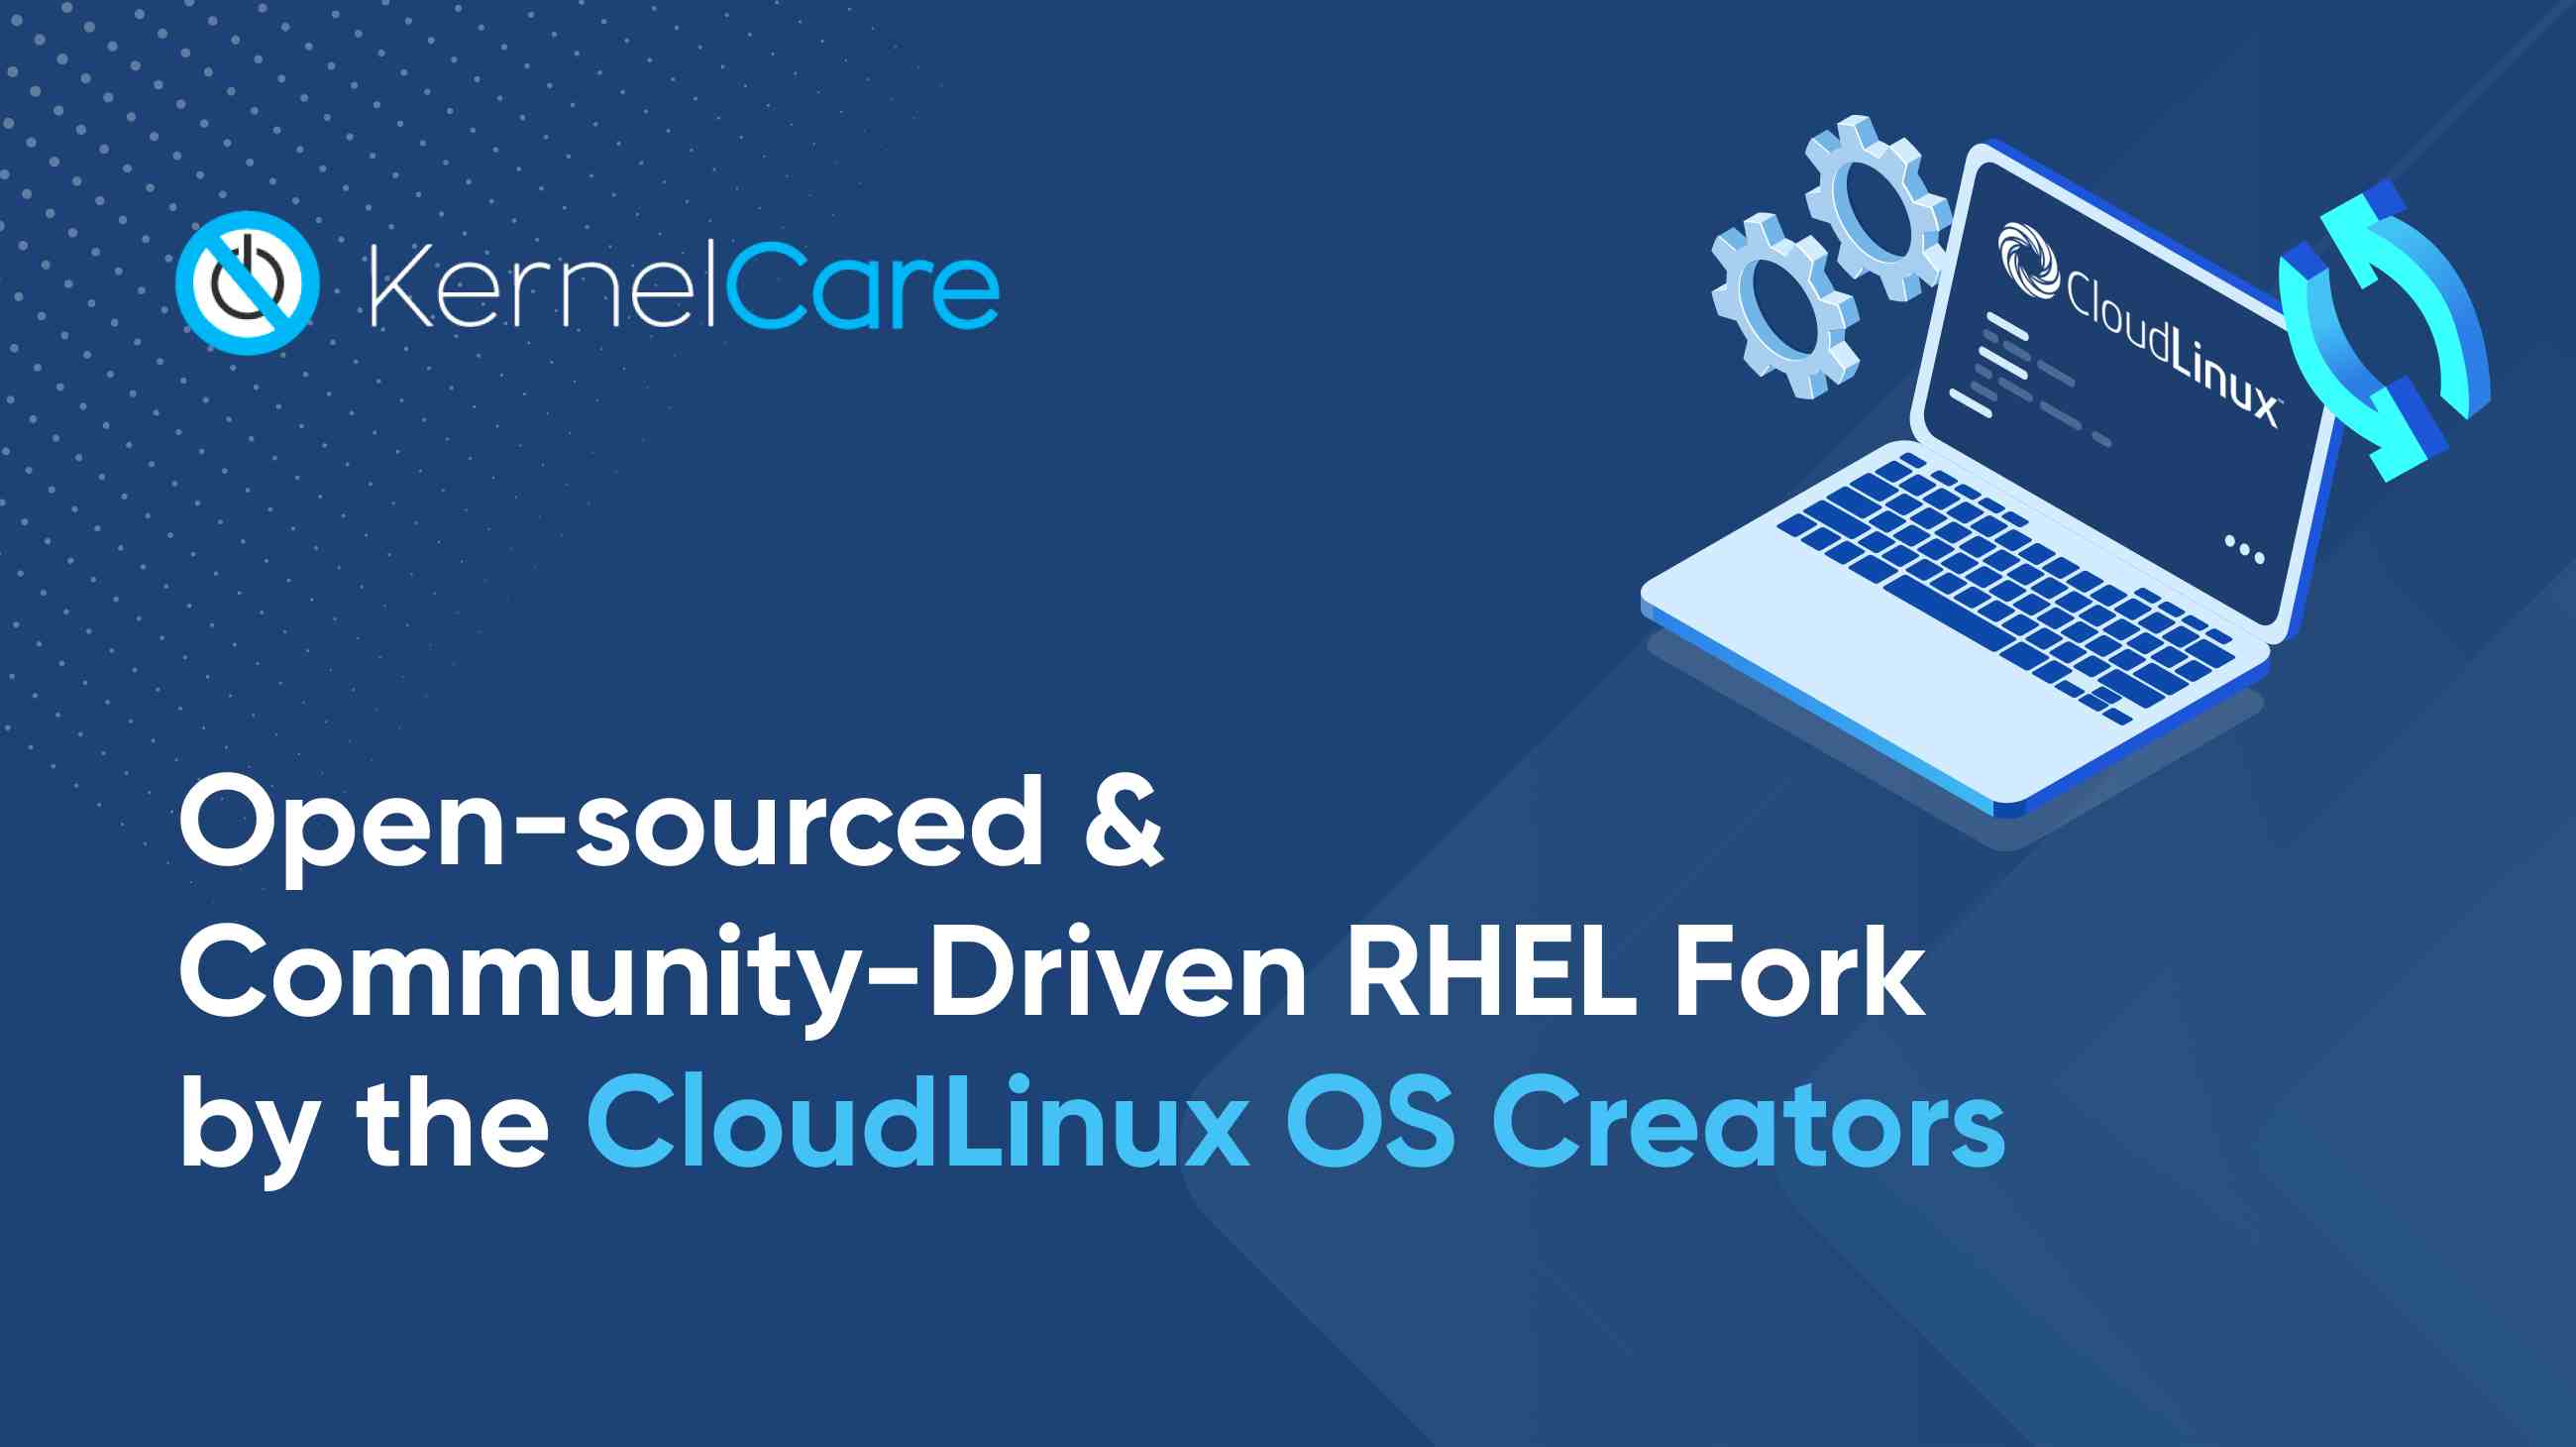 RHEL Fork by CloudLinux OS